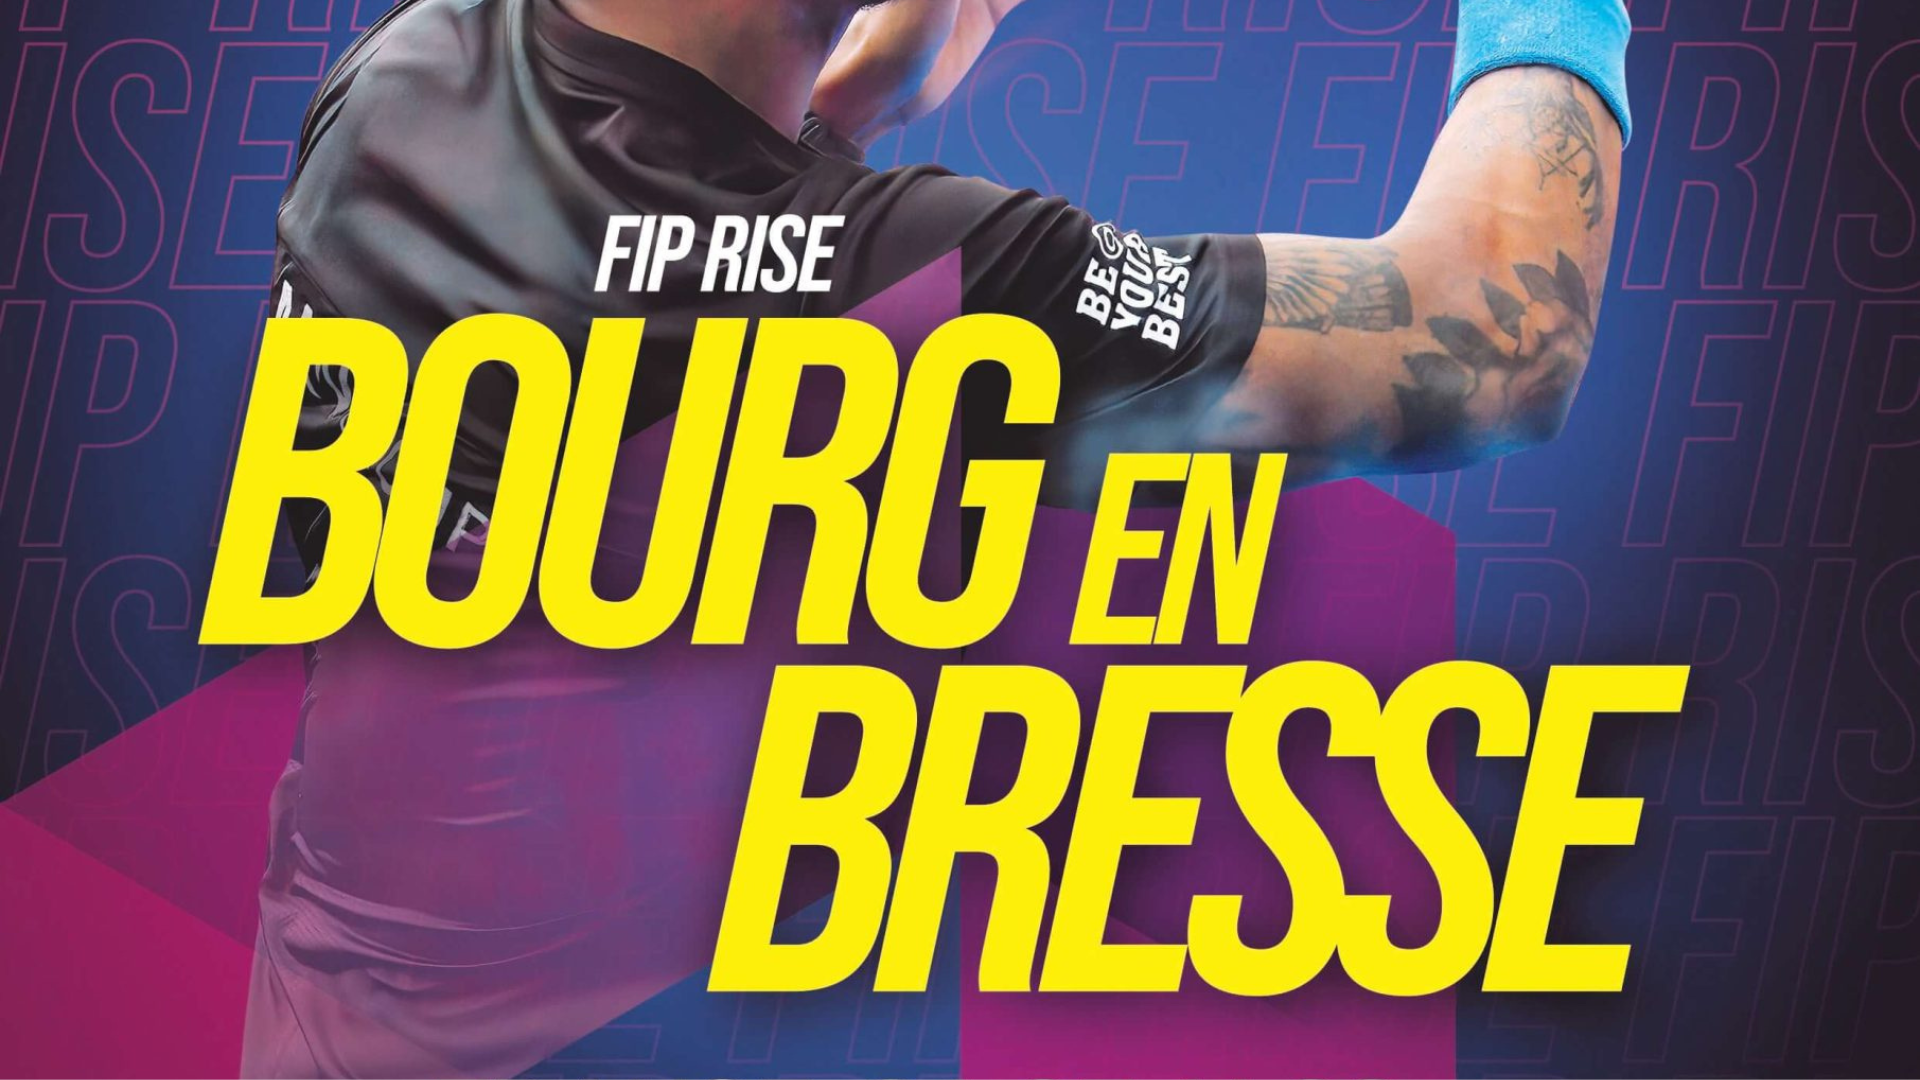 FIP Bourg en Bresse displays 16 9